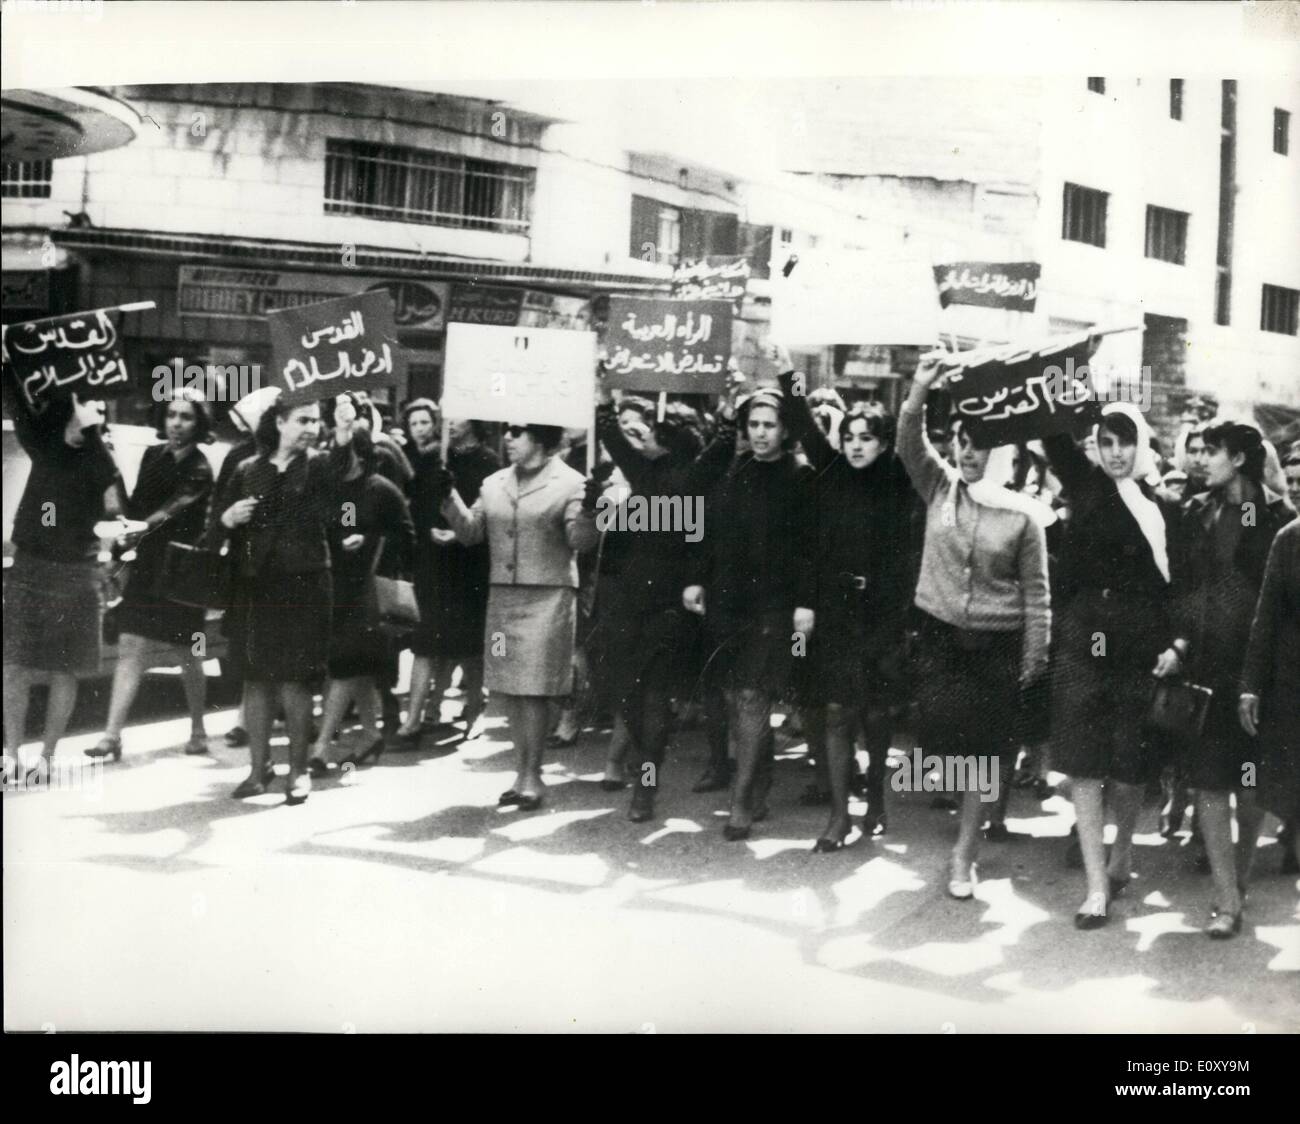 Avril 04, 1968 - Femmes arabes protester contre l'armée israélienne planifiée Parade. Photo montre :- manifestants femmes arabes marche dans Banque D'Images